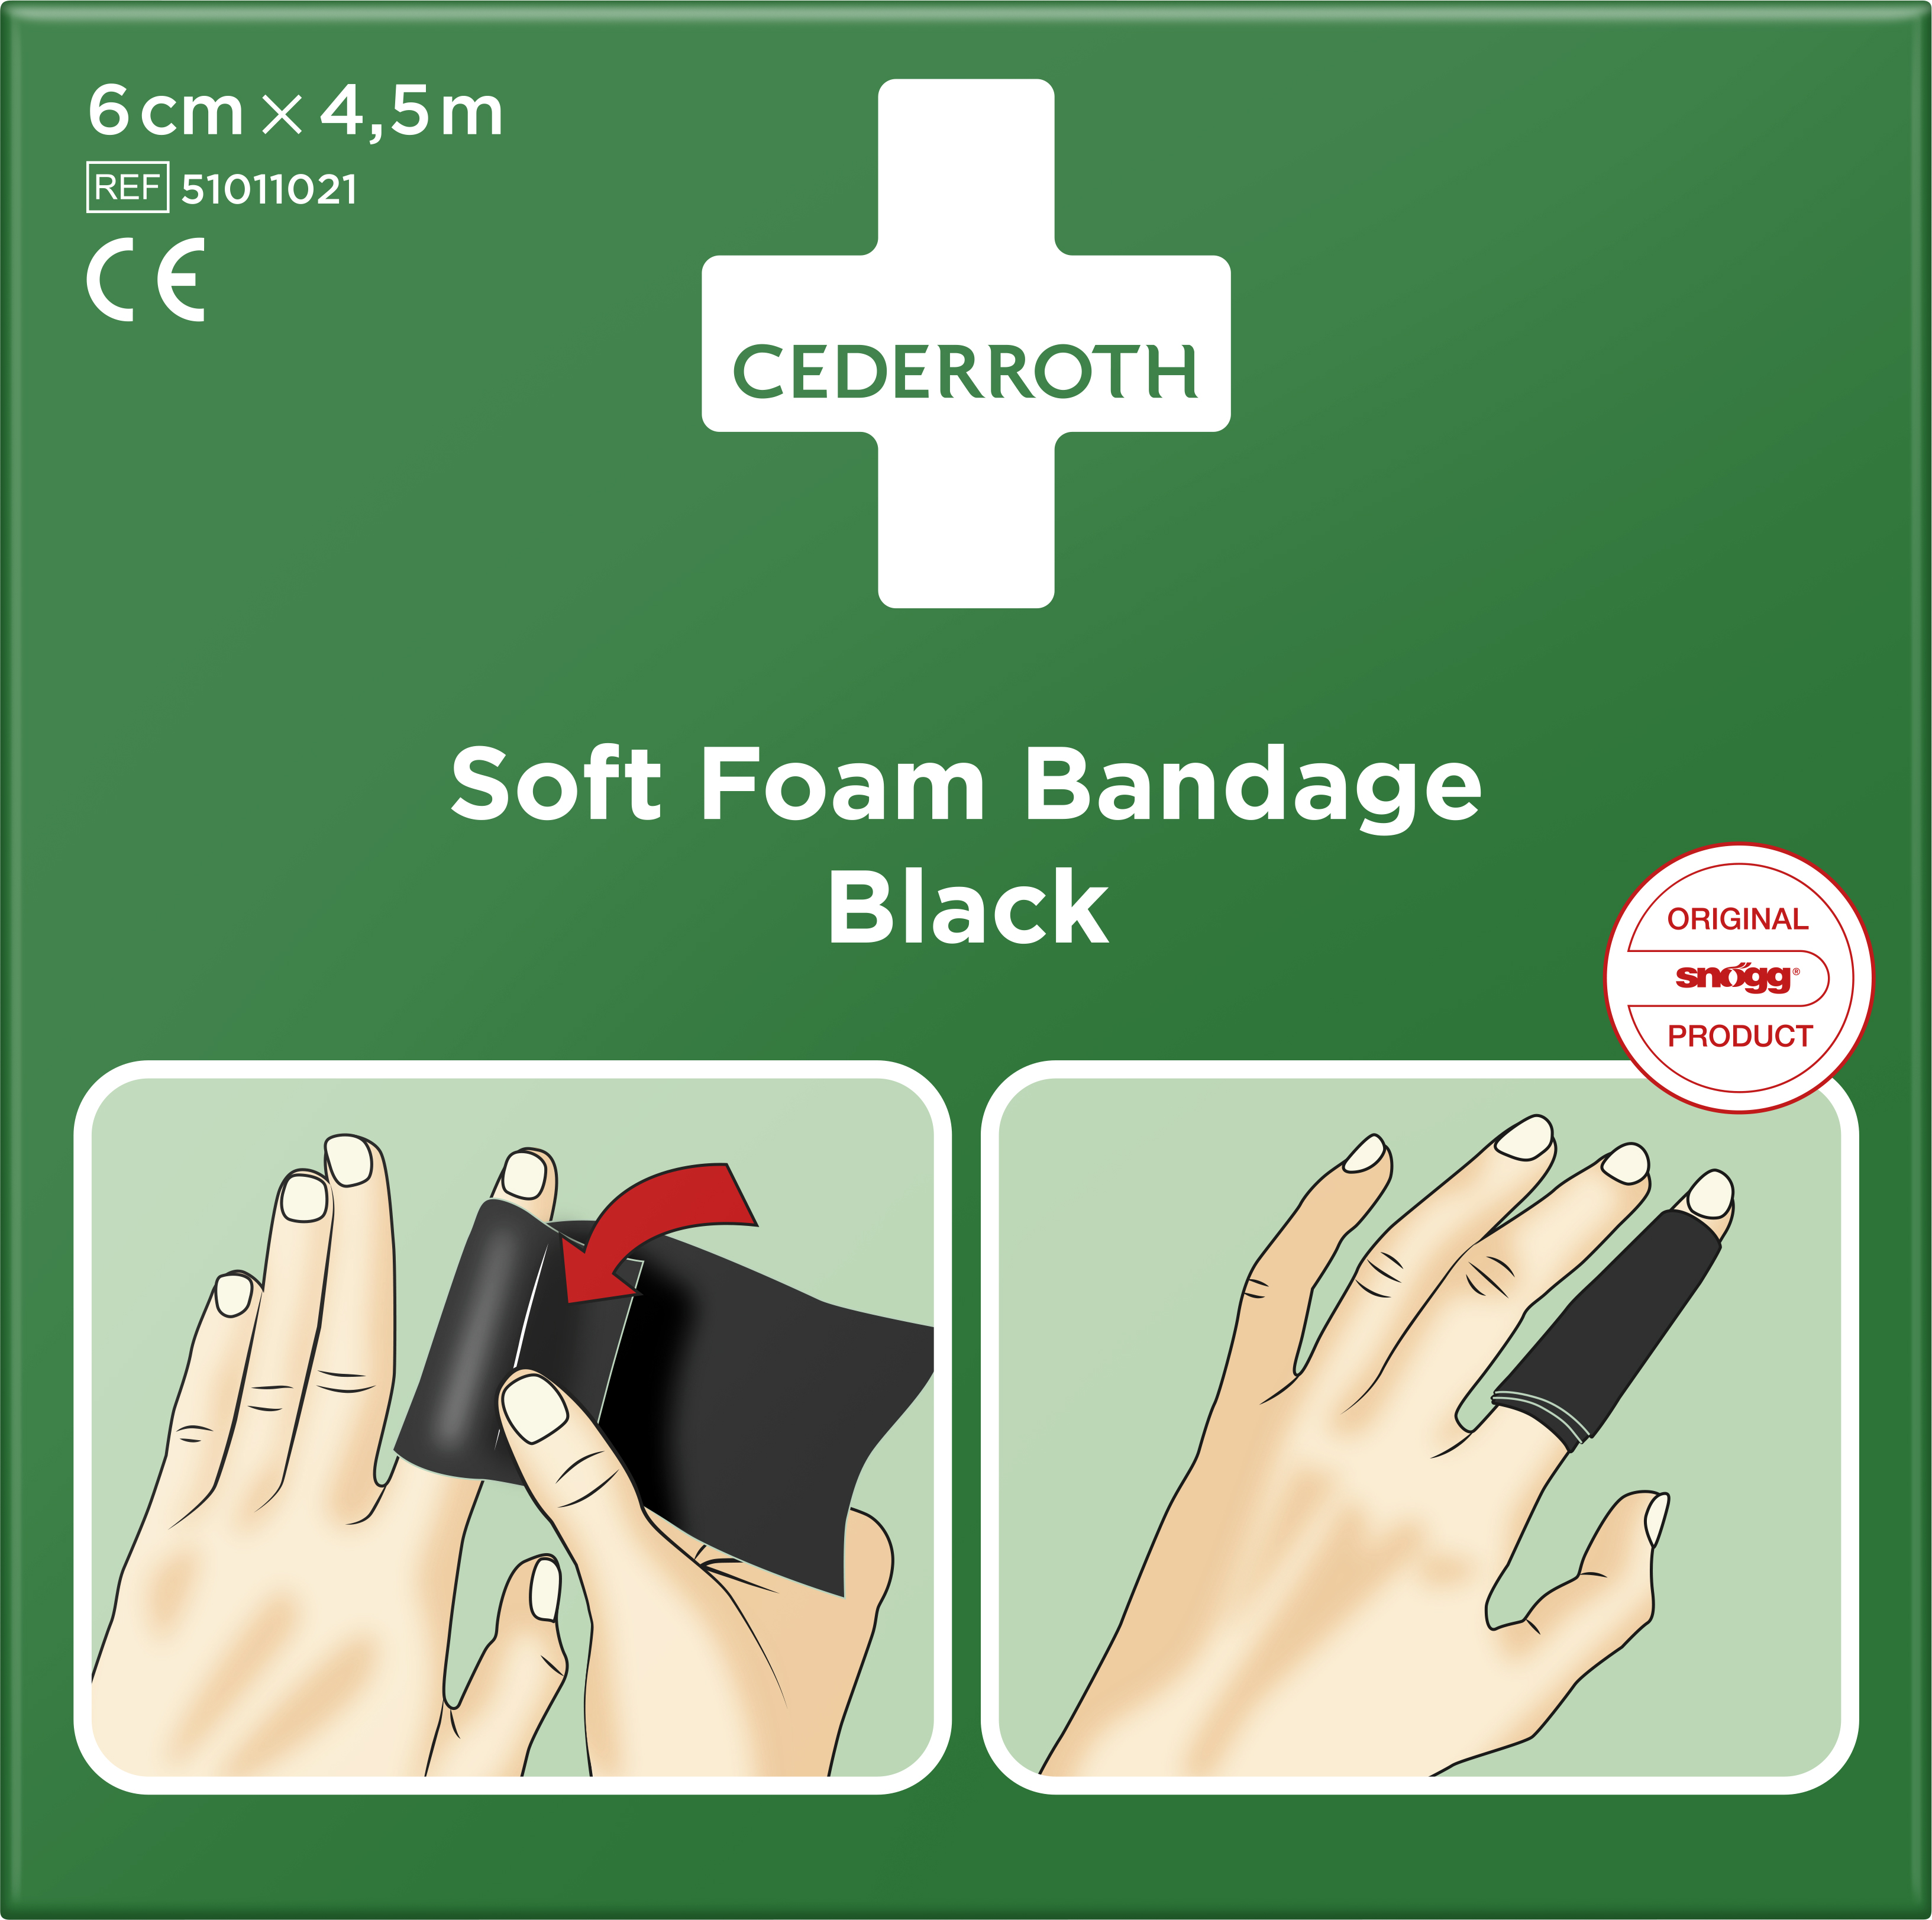 Cederroth Soft Foam Bandage Black 6cm x 4,5m